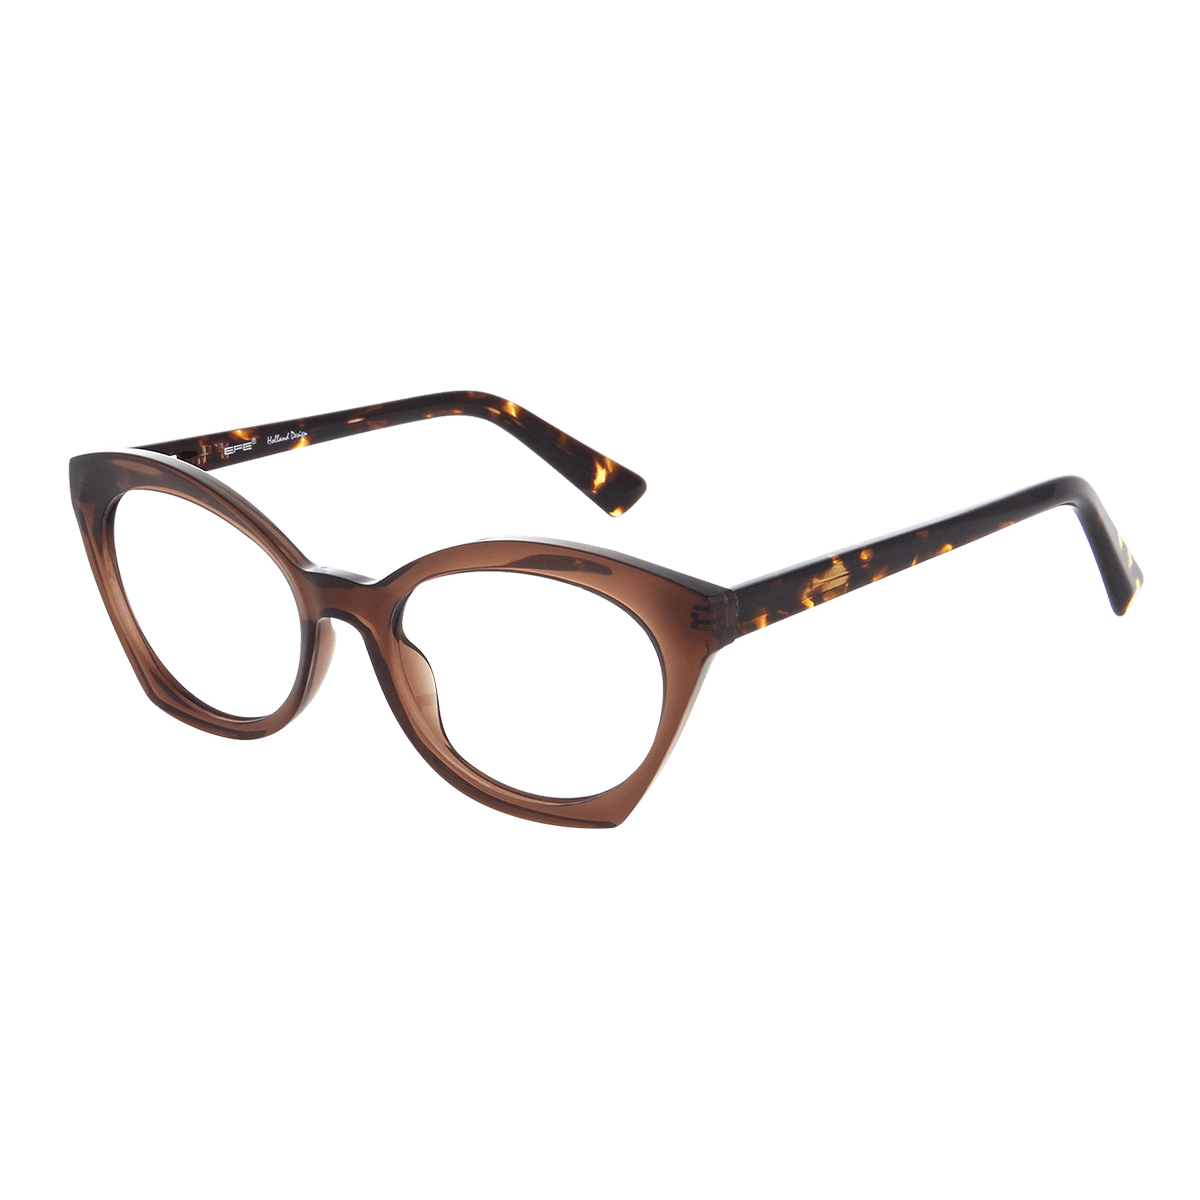 Dyras - Cat-eye Brown Reading Glasses for Women